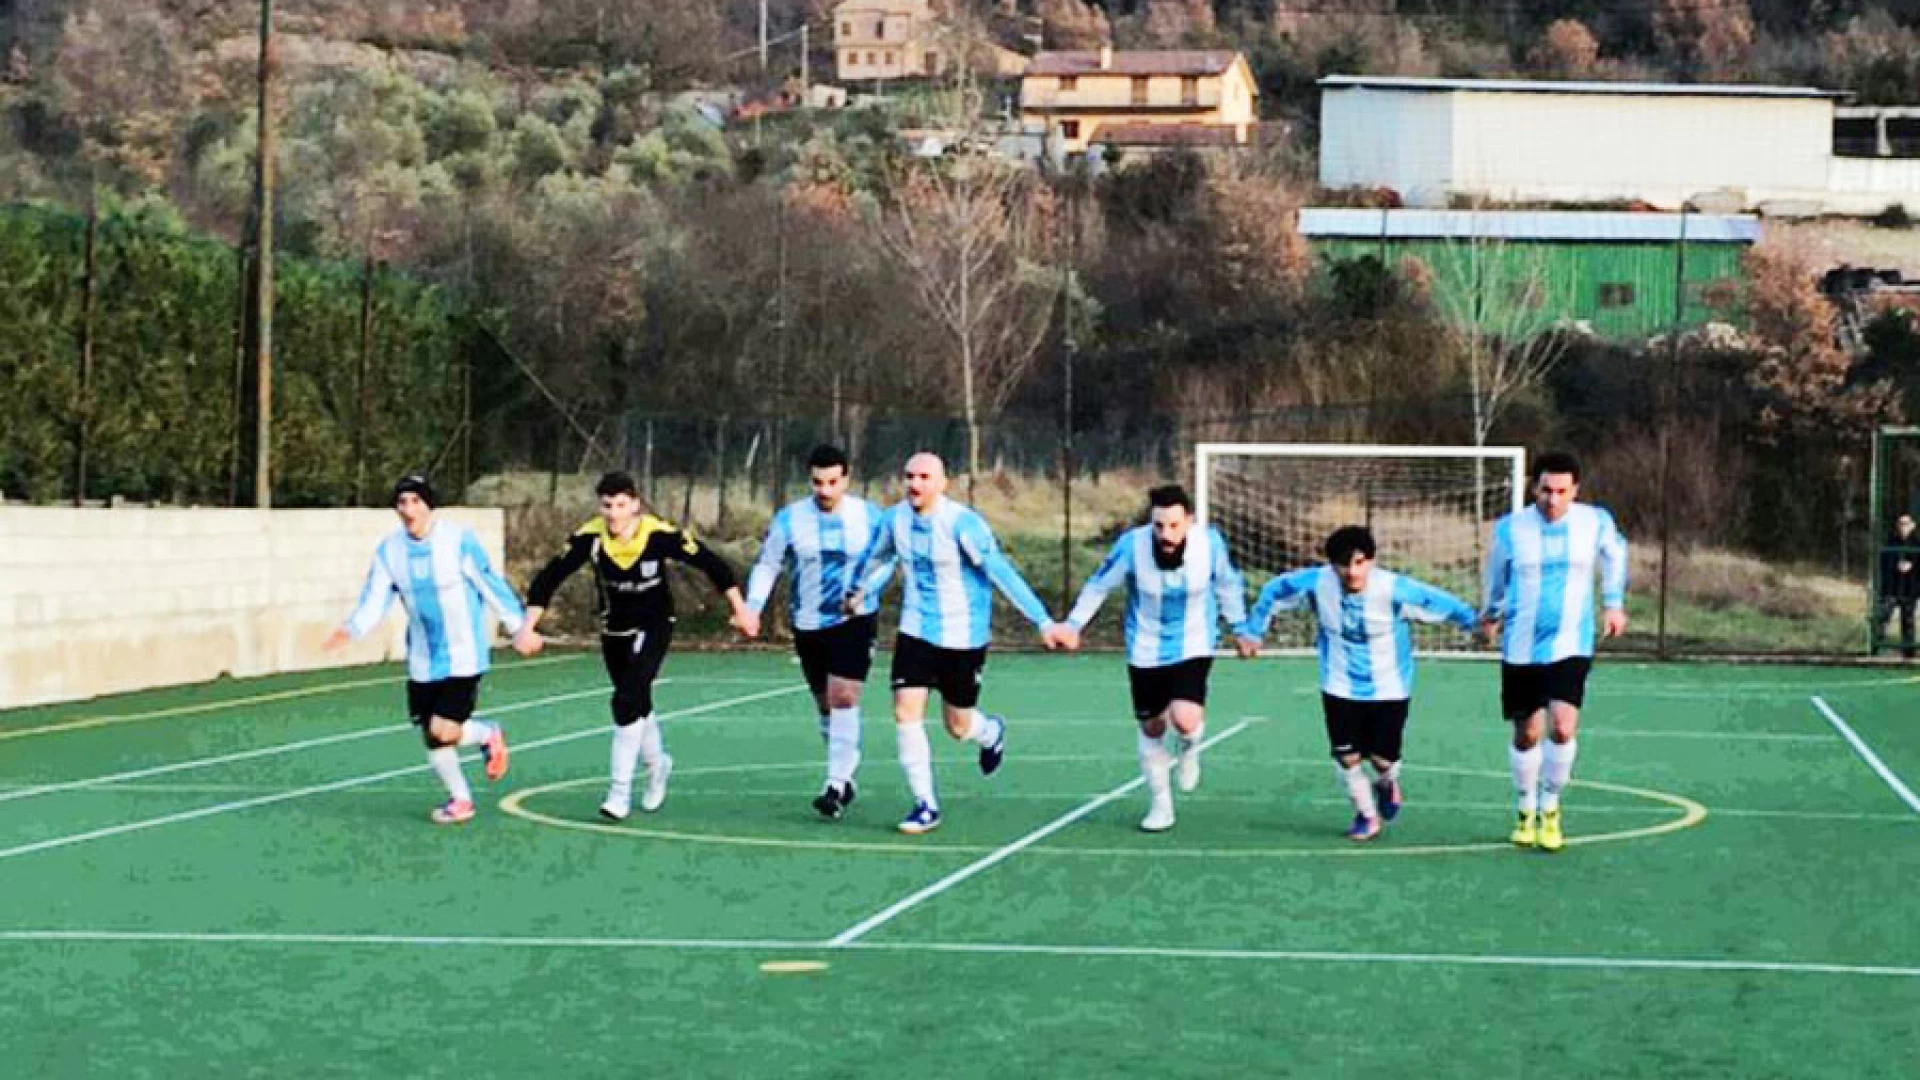 Calcio a 5: i ragazzi dell’Aqualand schiantano il Roccaravindola. La Futsal ne fa ben 16 e consolida il primato in classifica.